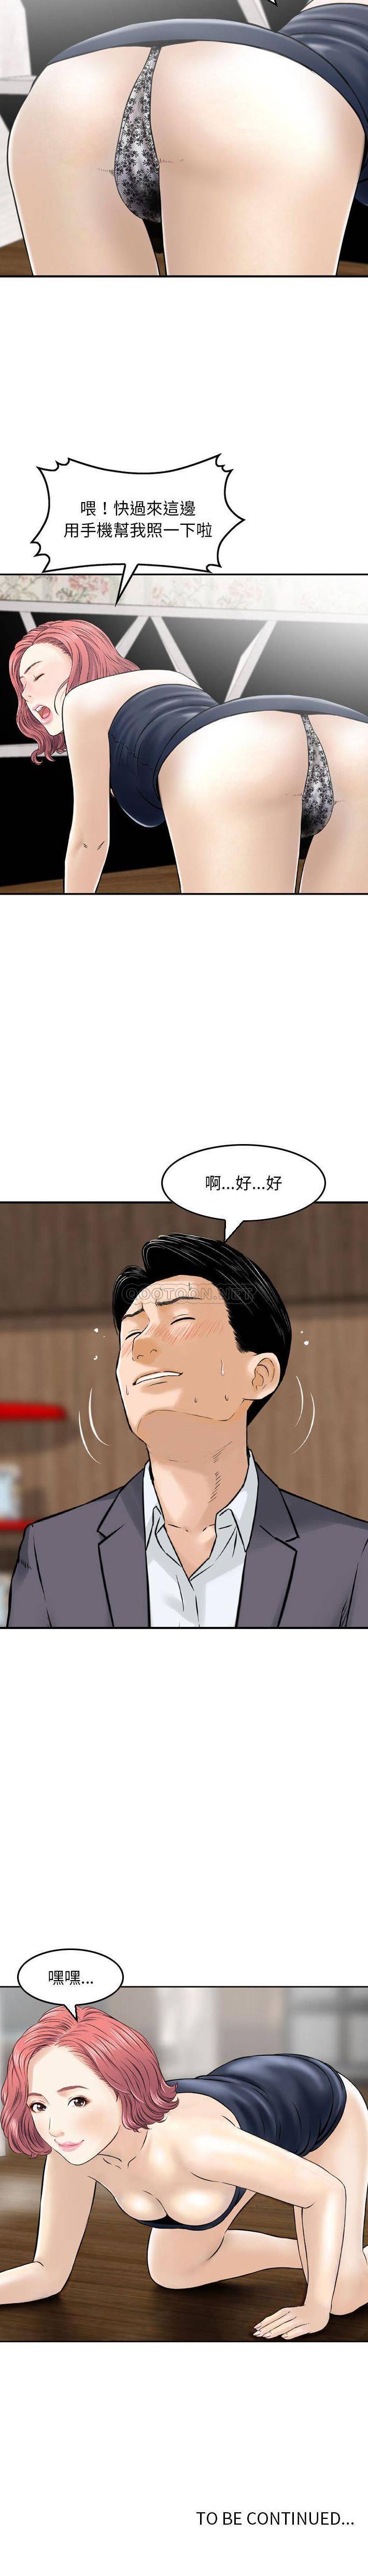 韩国污漫画 金錢的魅力 第13话 16